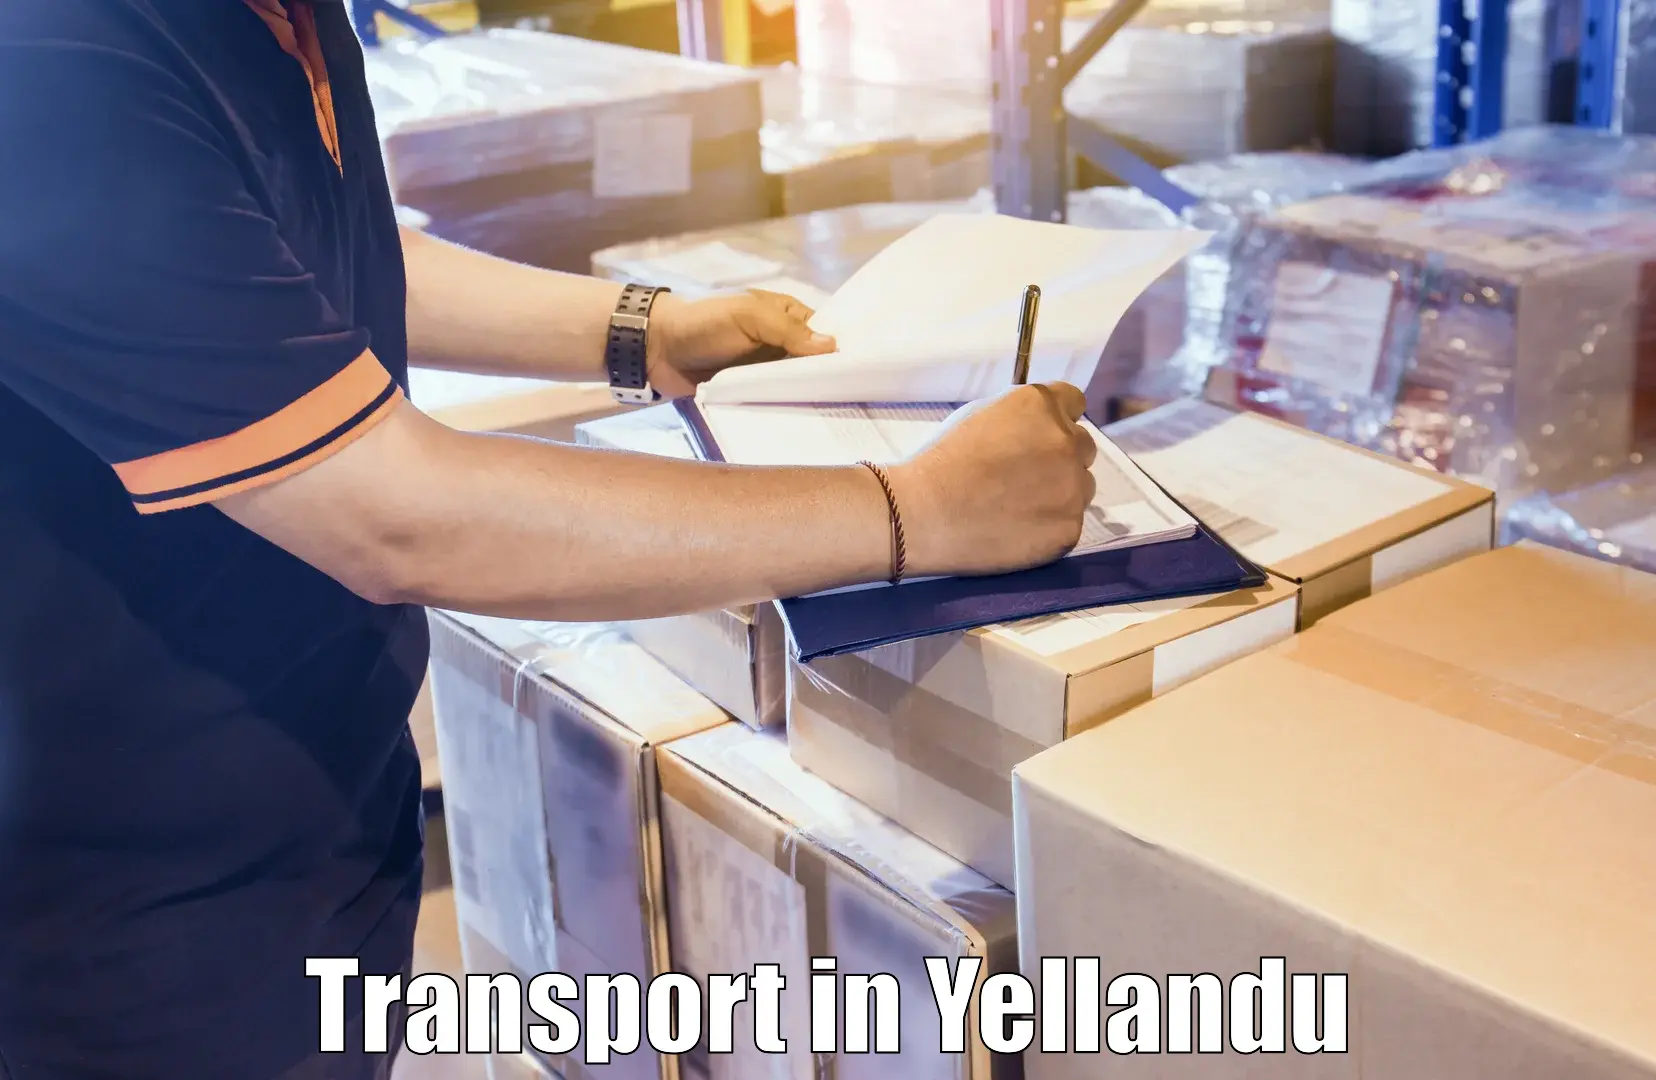 Online transport in Yellandu